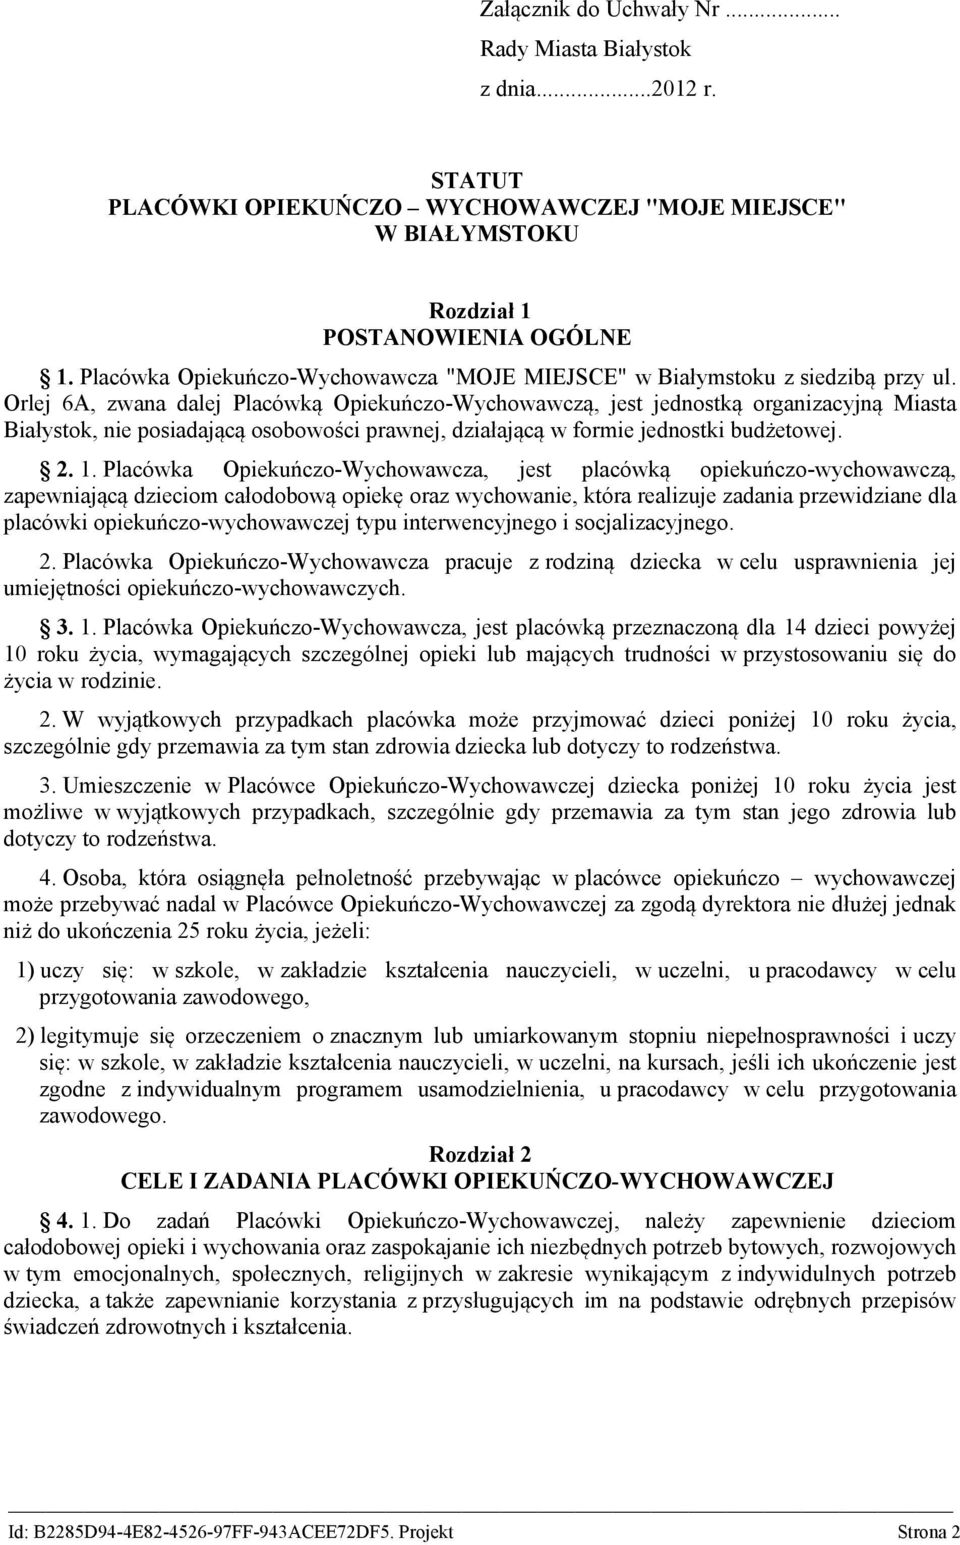 Orlej 6A, zwana dalej Placówką Opiekuńczo-Wychowawczą, jest jednostką organizacyjną Miasta Białystok, nie posiadającą osobowości prawnej, działającą w formie jednostki budżetowej. 2. 1.